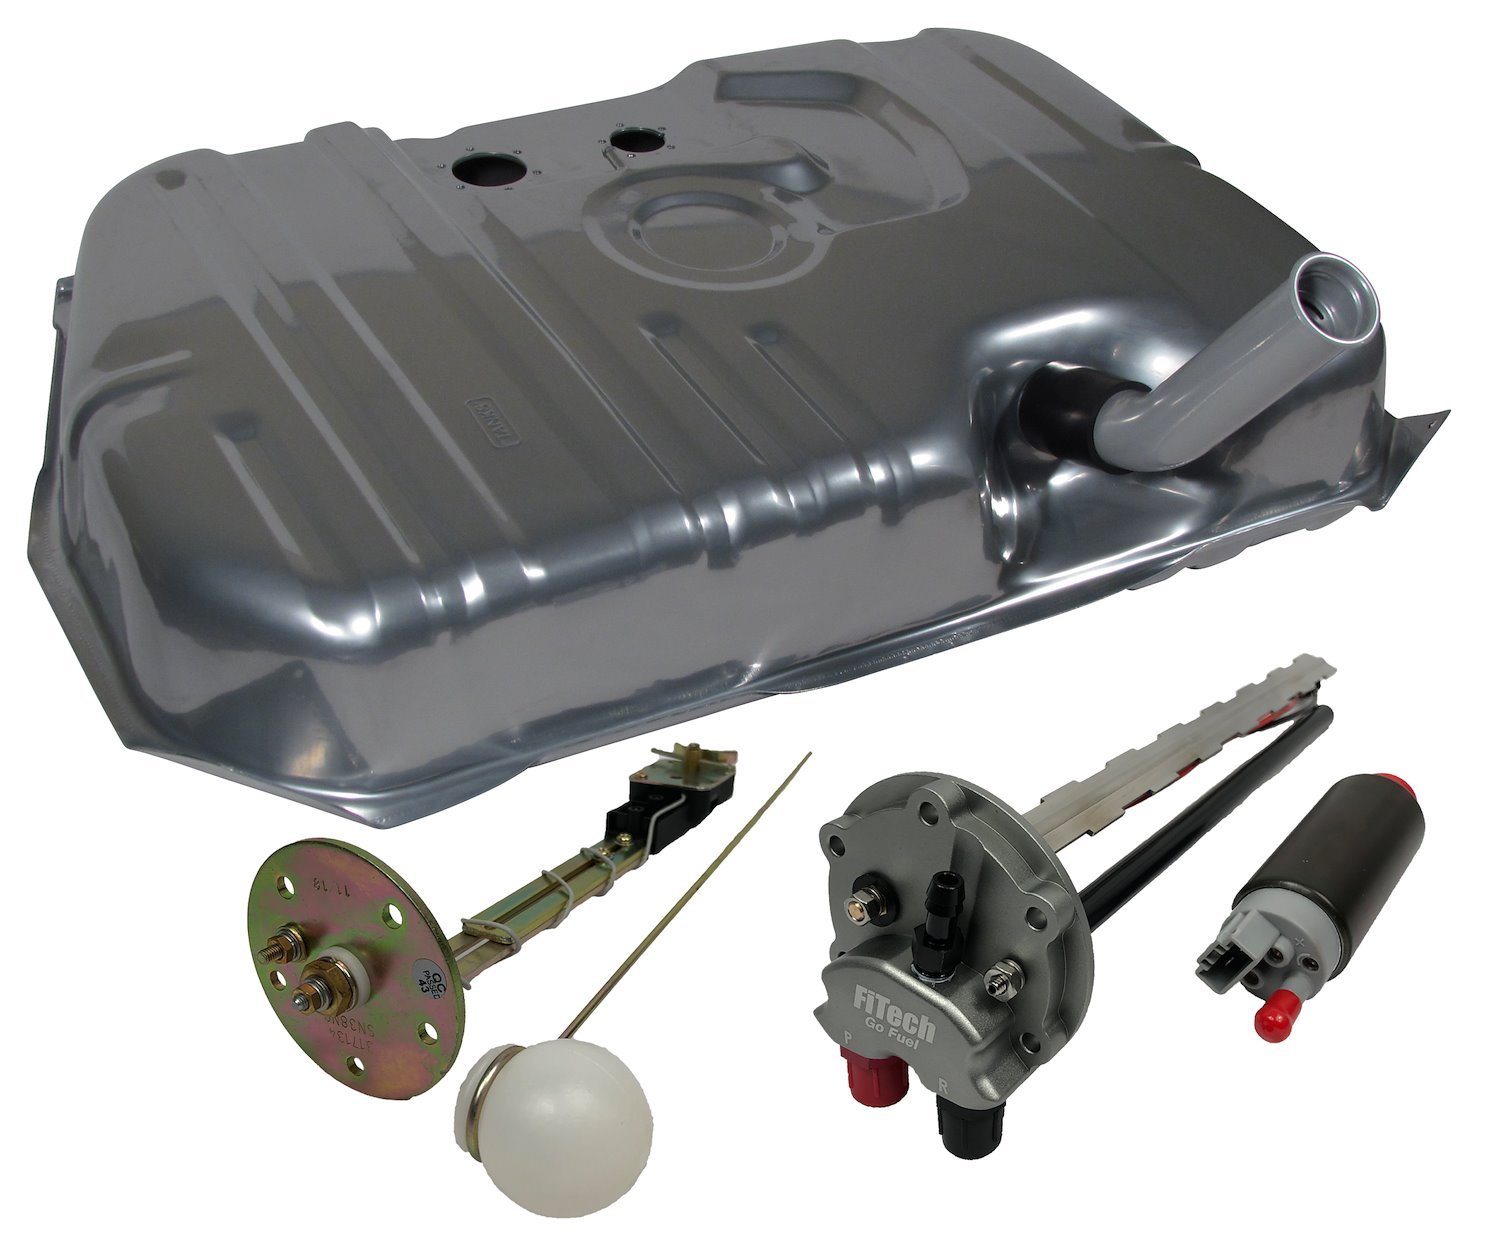 Fuel Tank Kit for Oldsmobile Cutlass